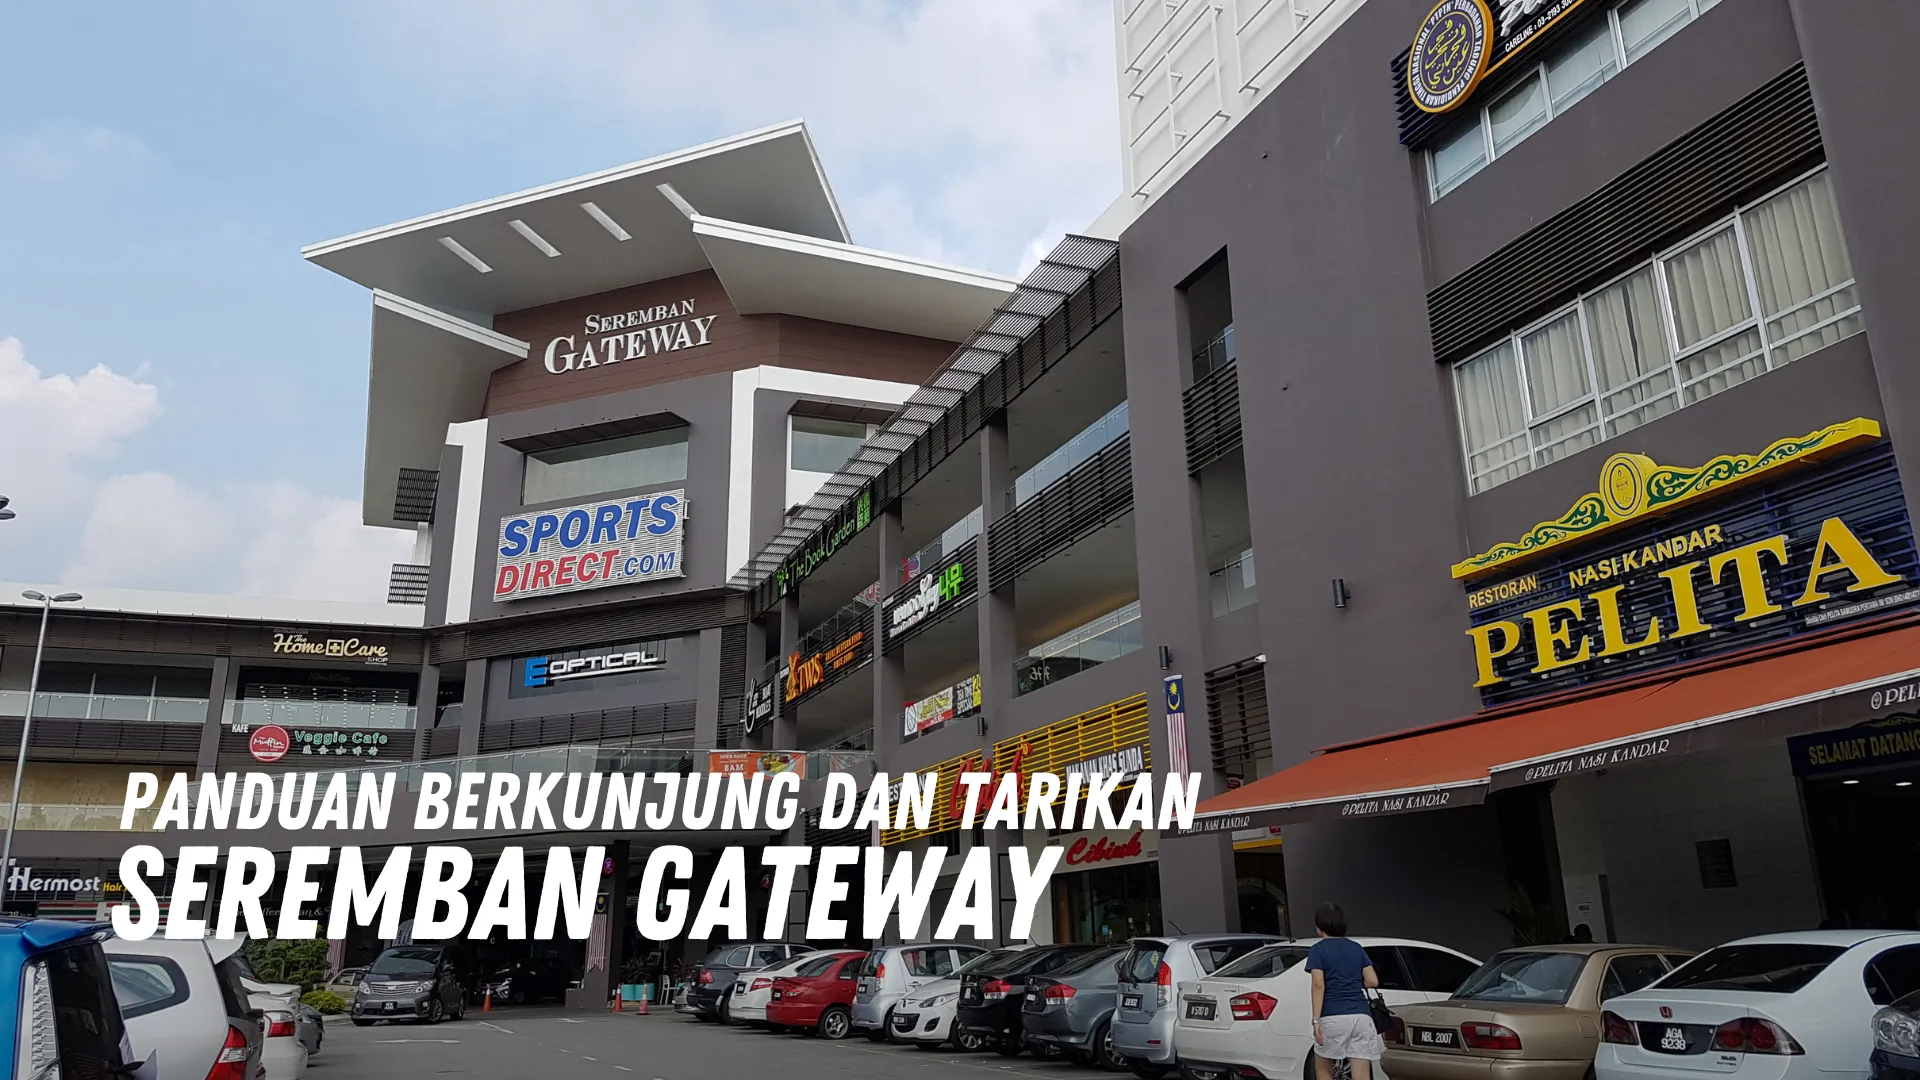 Review Seremban Gateway Malaysia